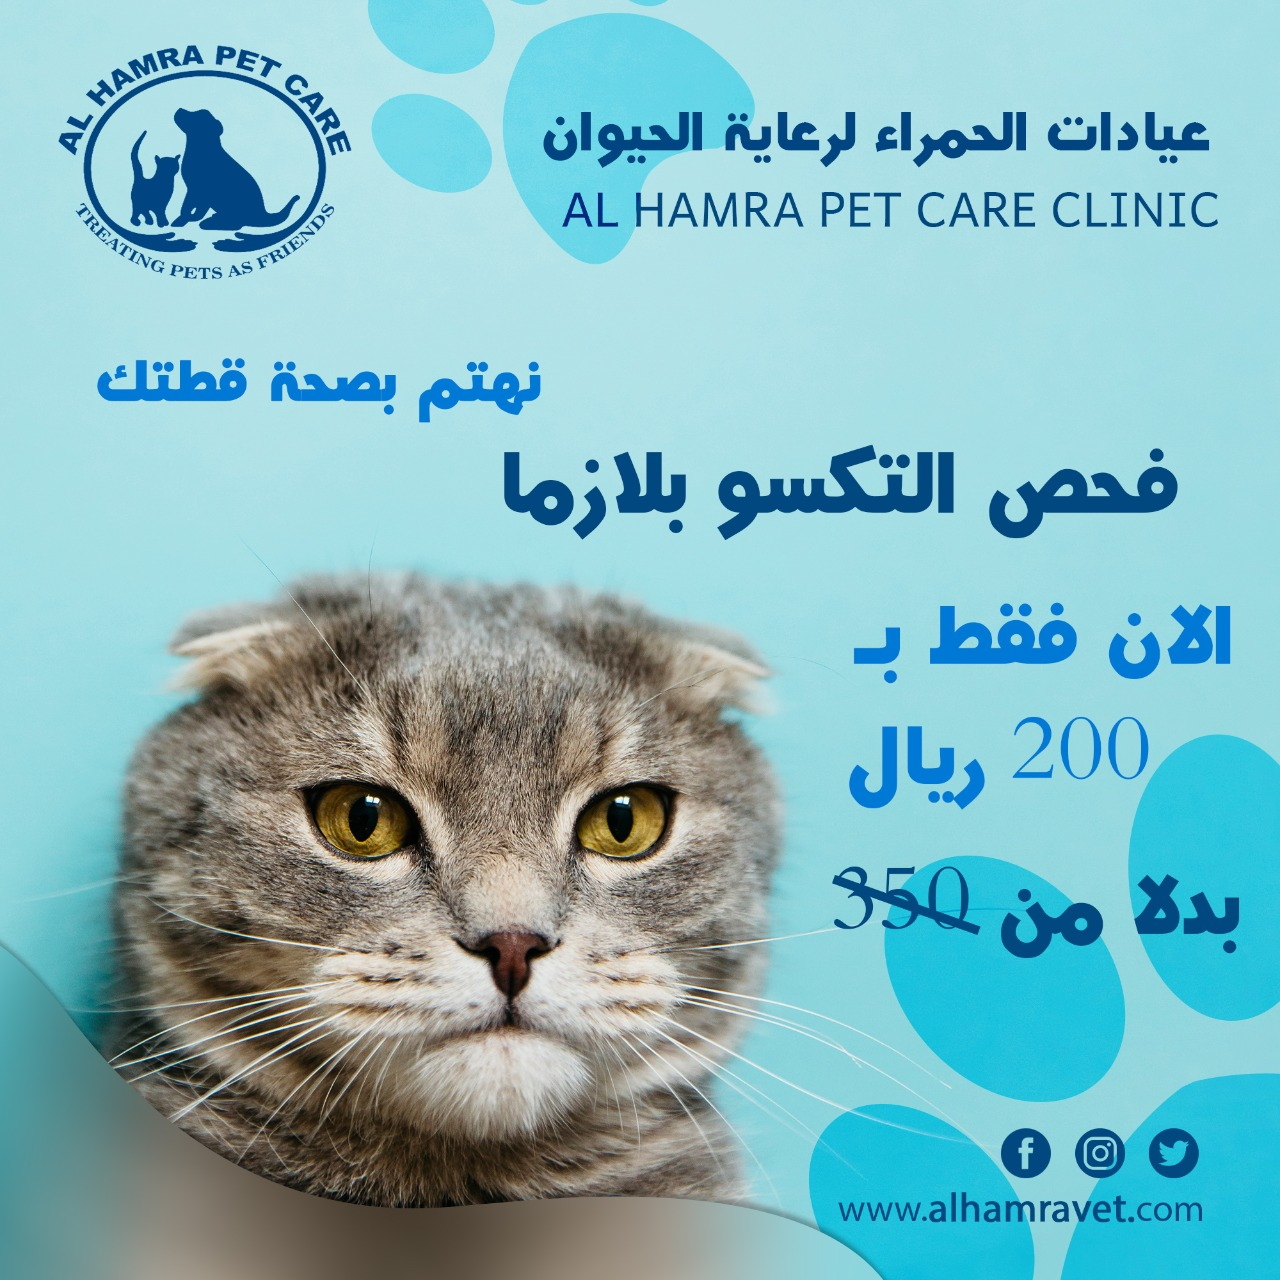 Al Hamra Pet Care Clinic